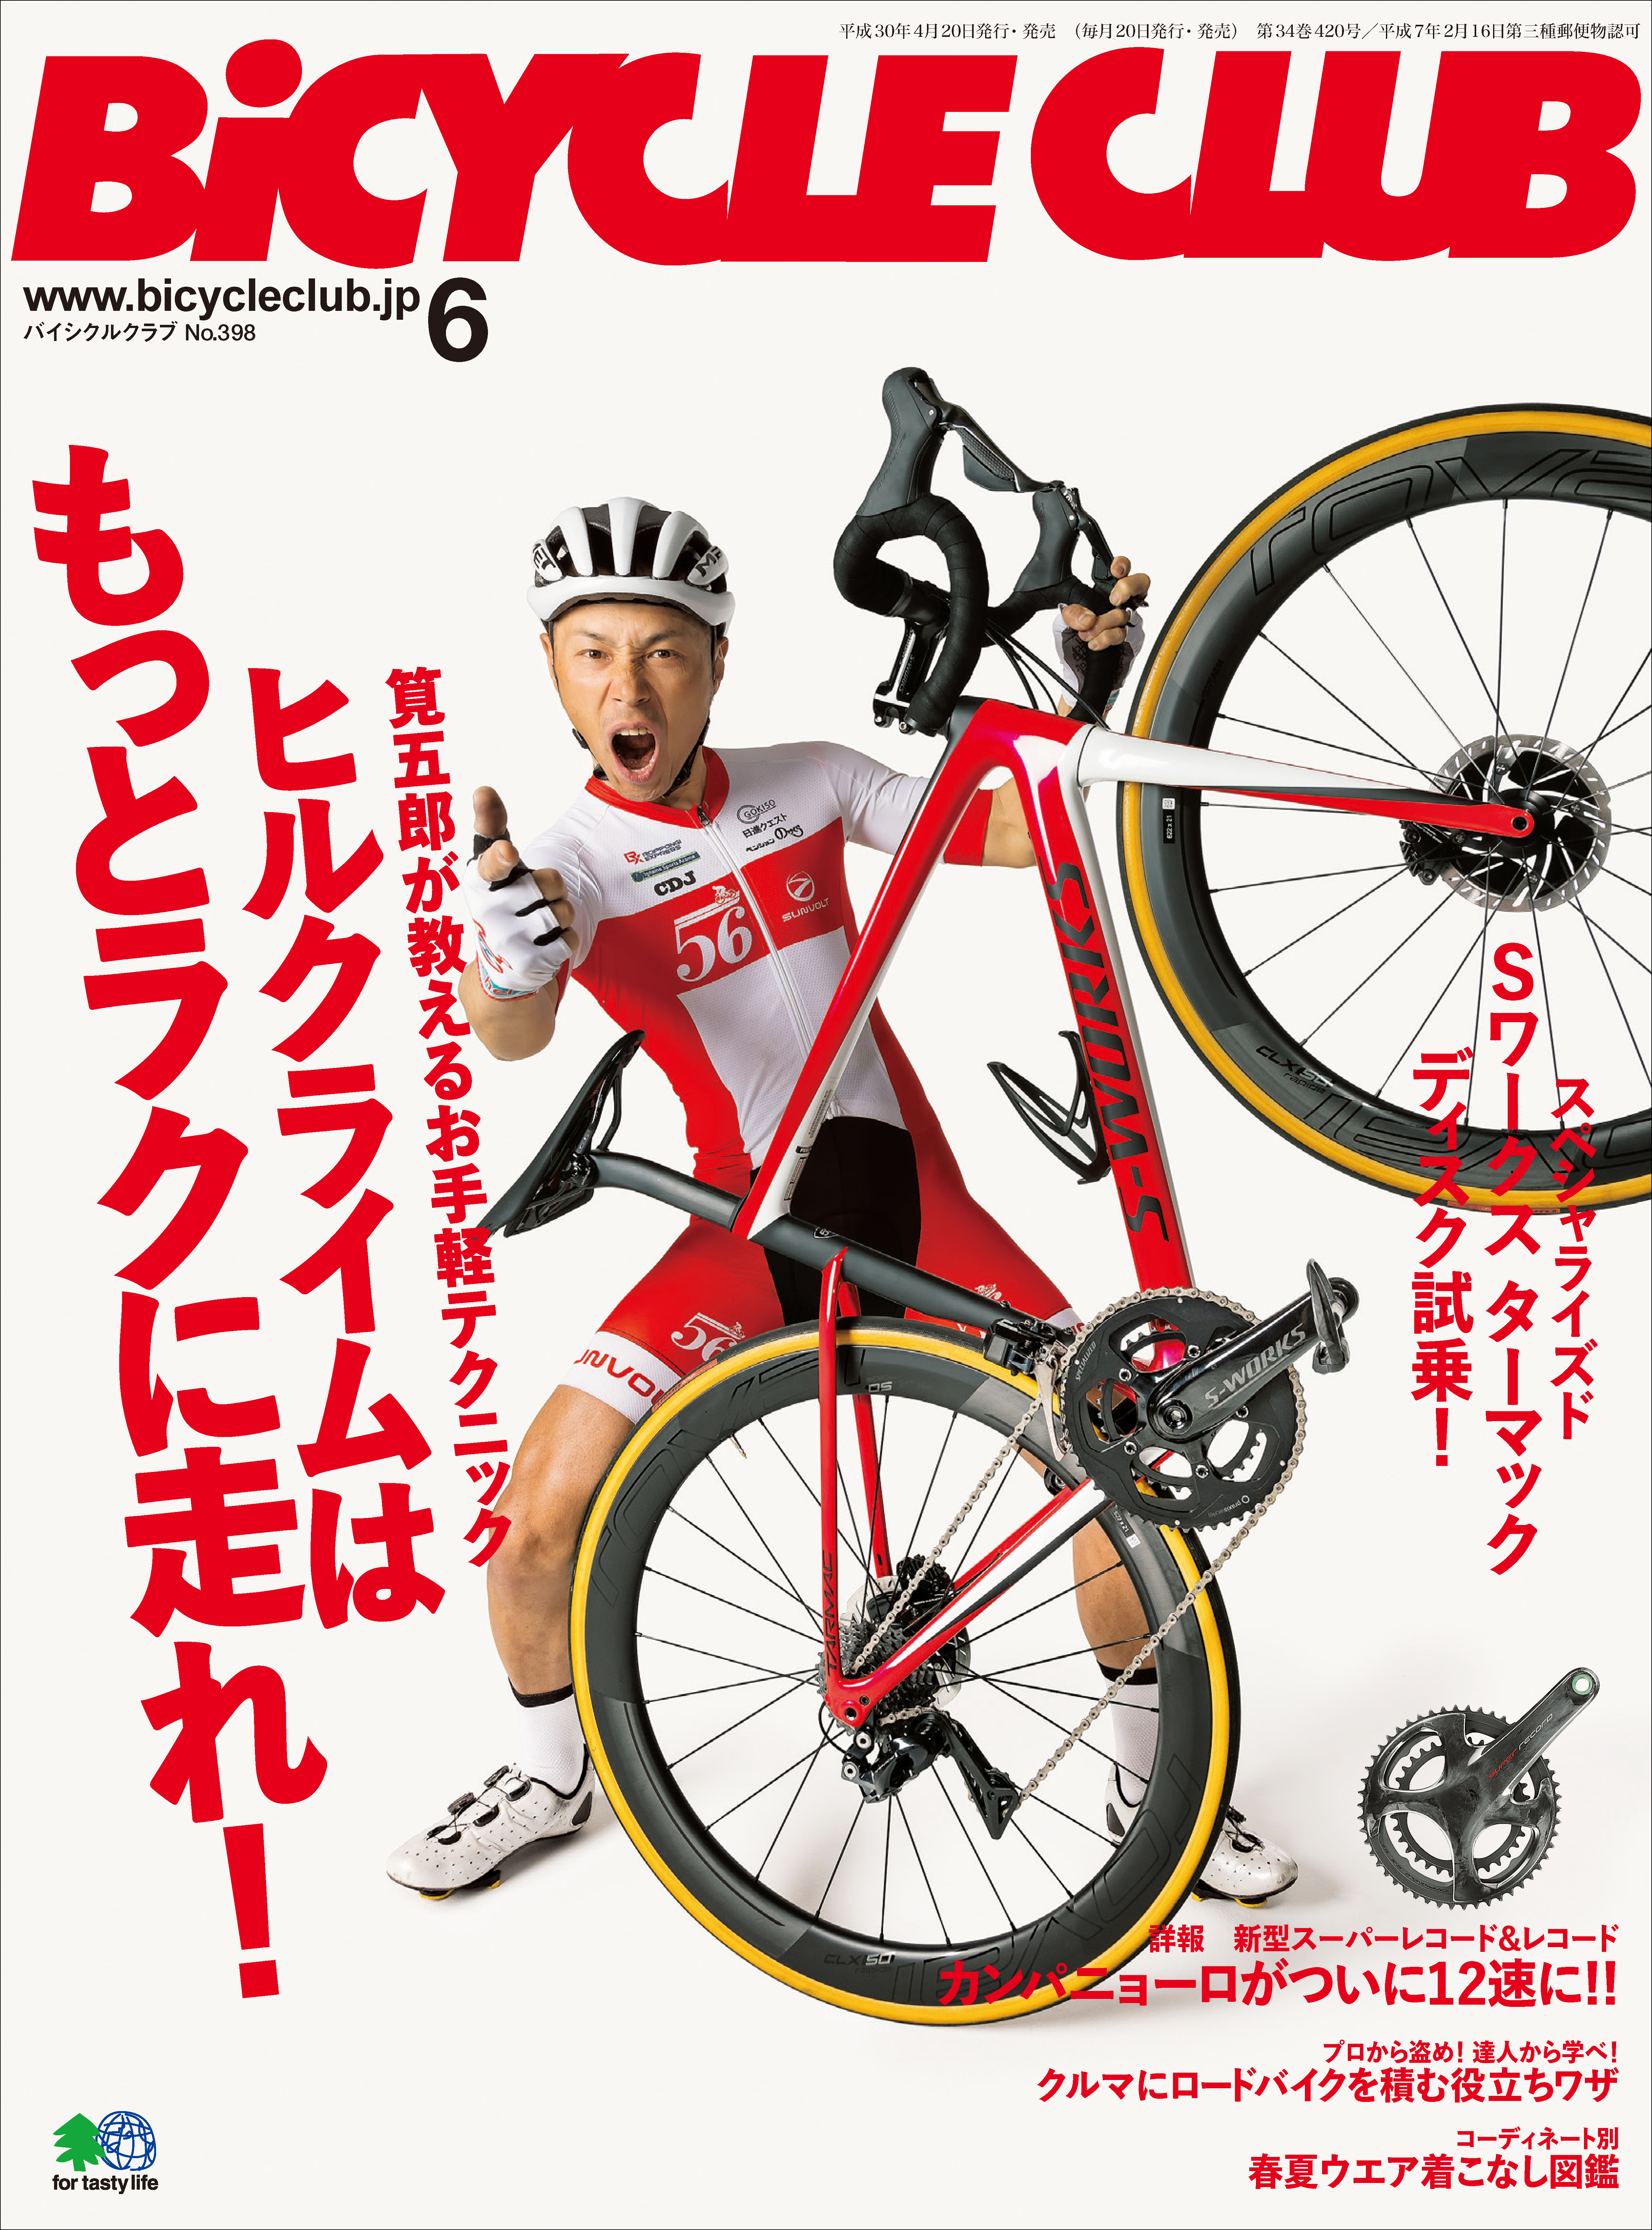 Bicycle Club バイシクルクラブ 自転車競技 ロードバイク 21冊 通販